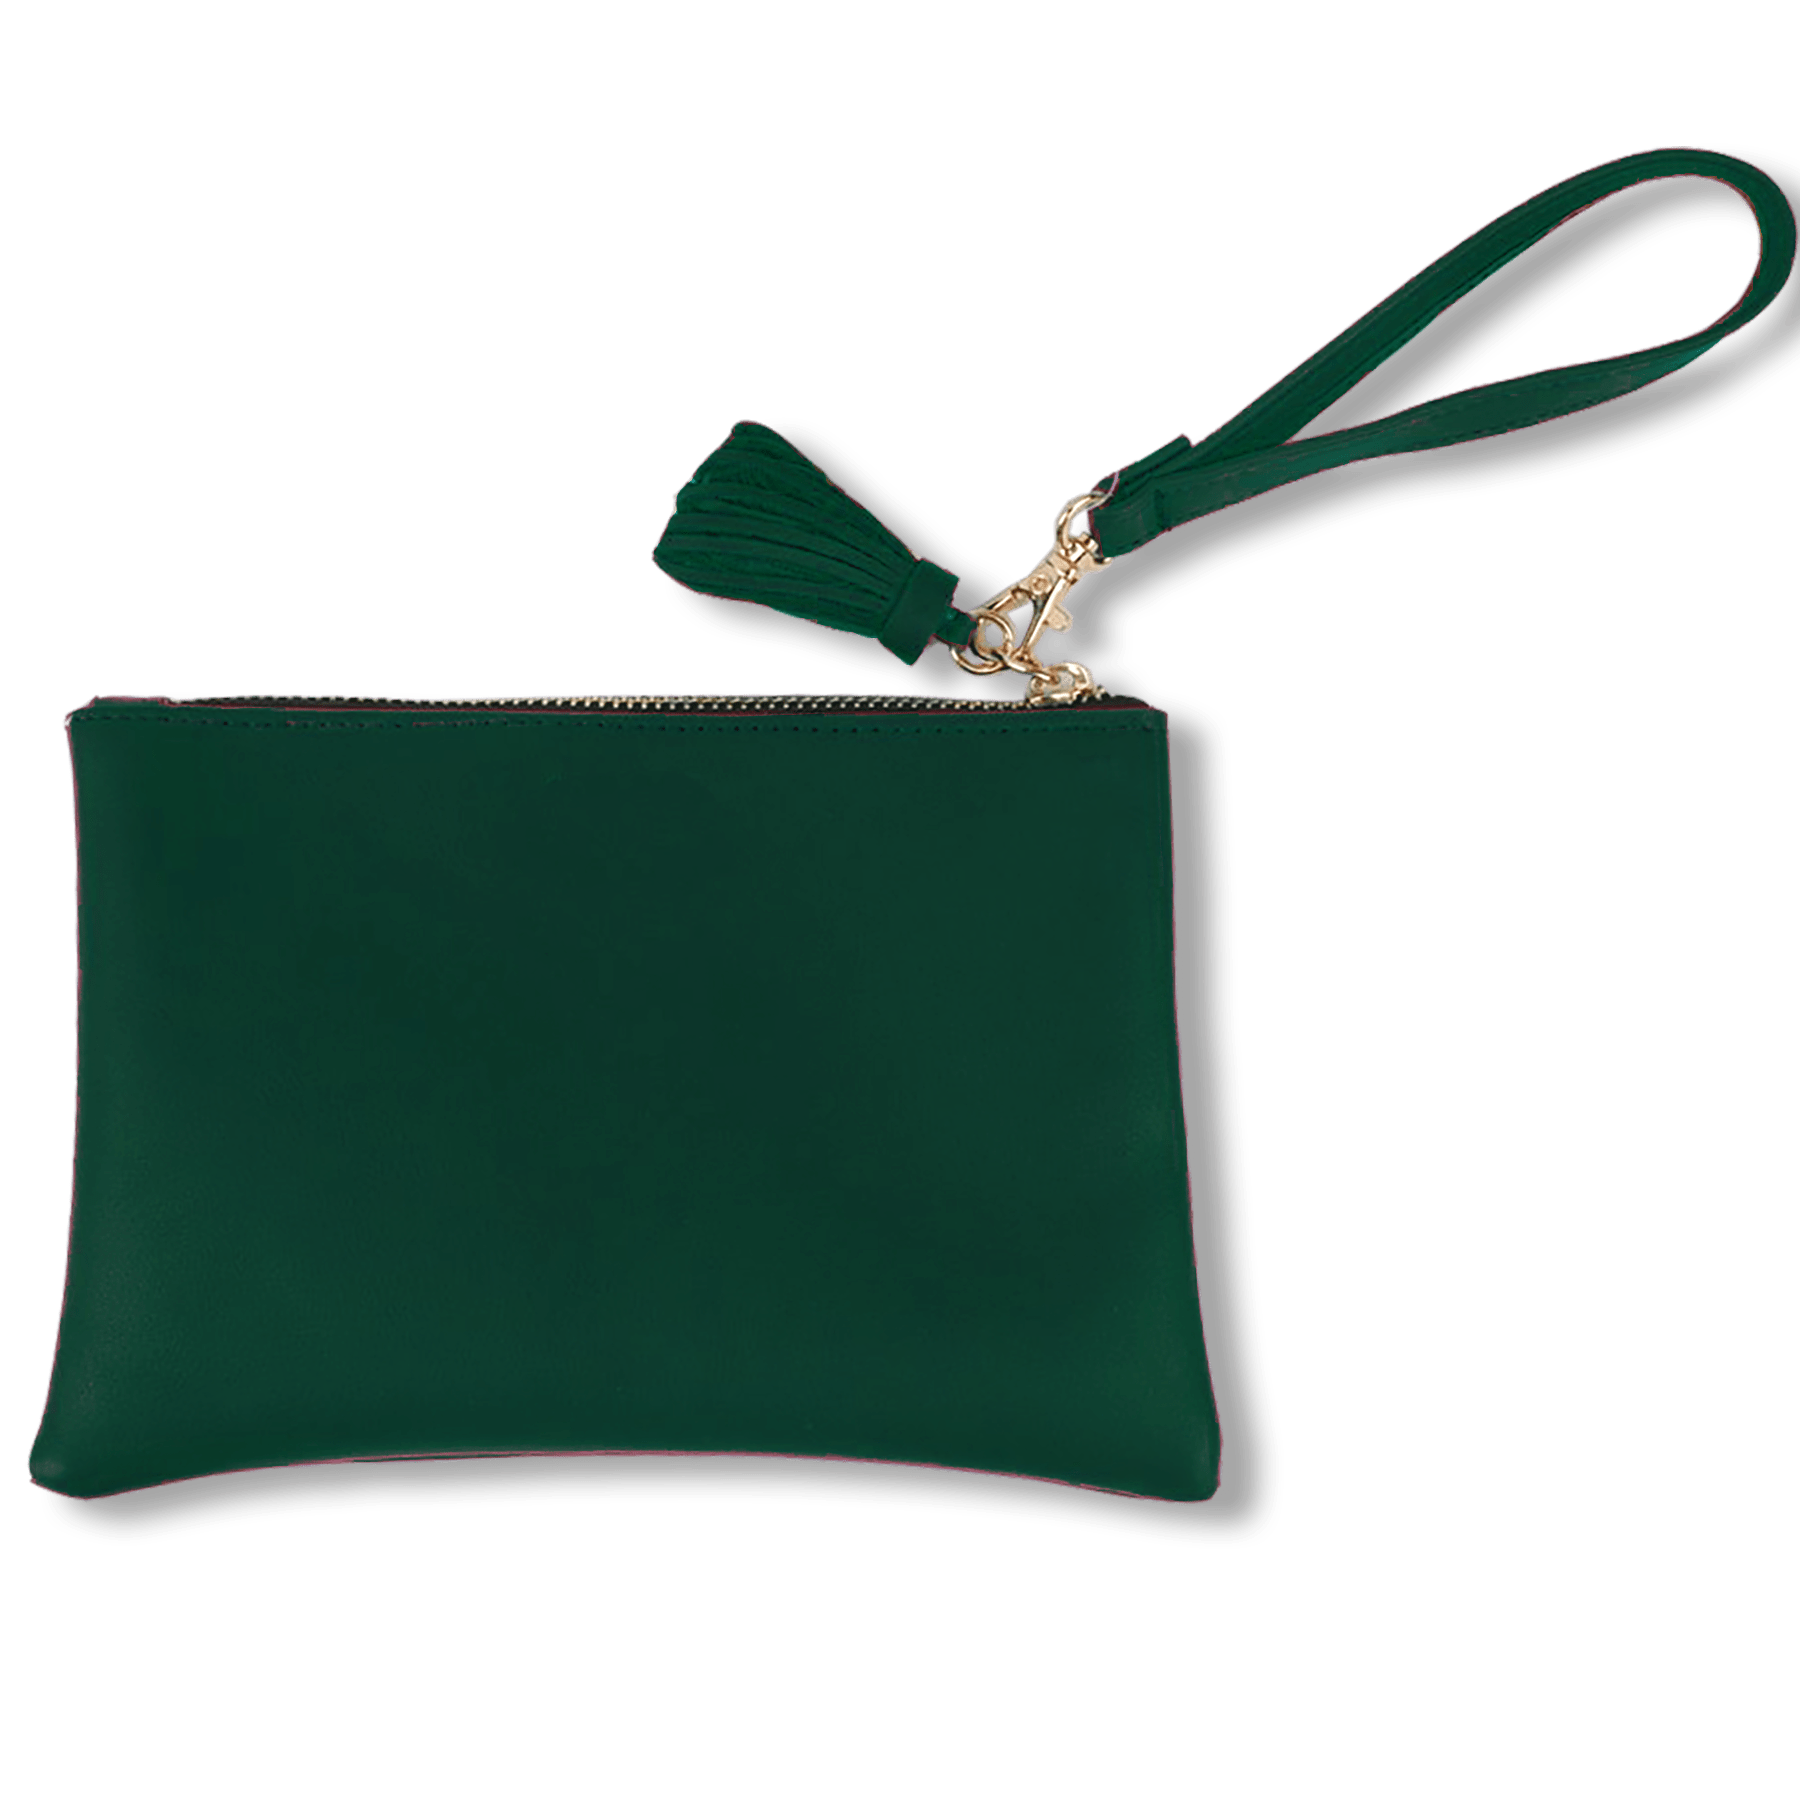 Buy Exotic Women Green Handbag Dark Green Online @ Best Price in India |  Flipkart.com